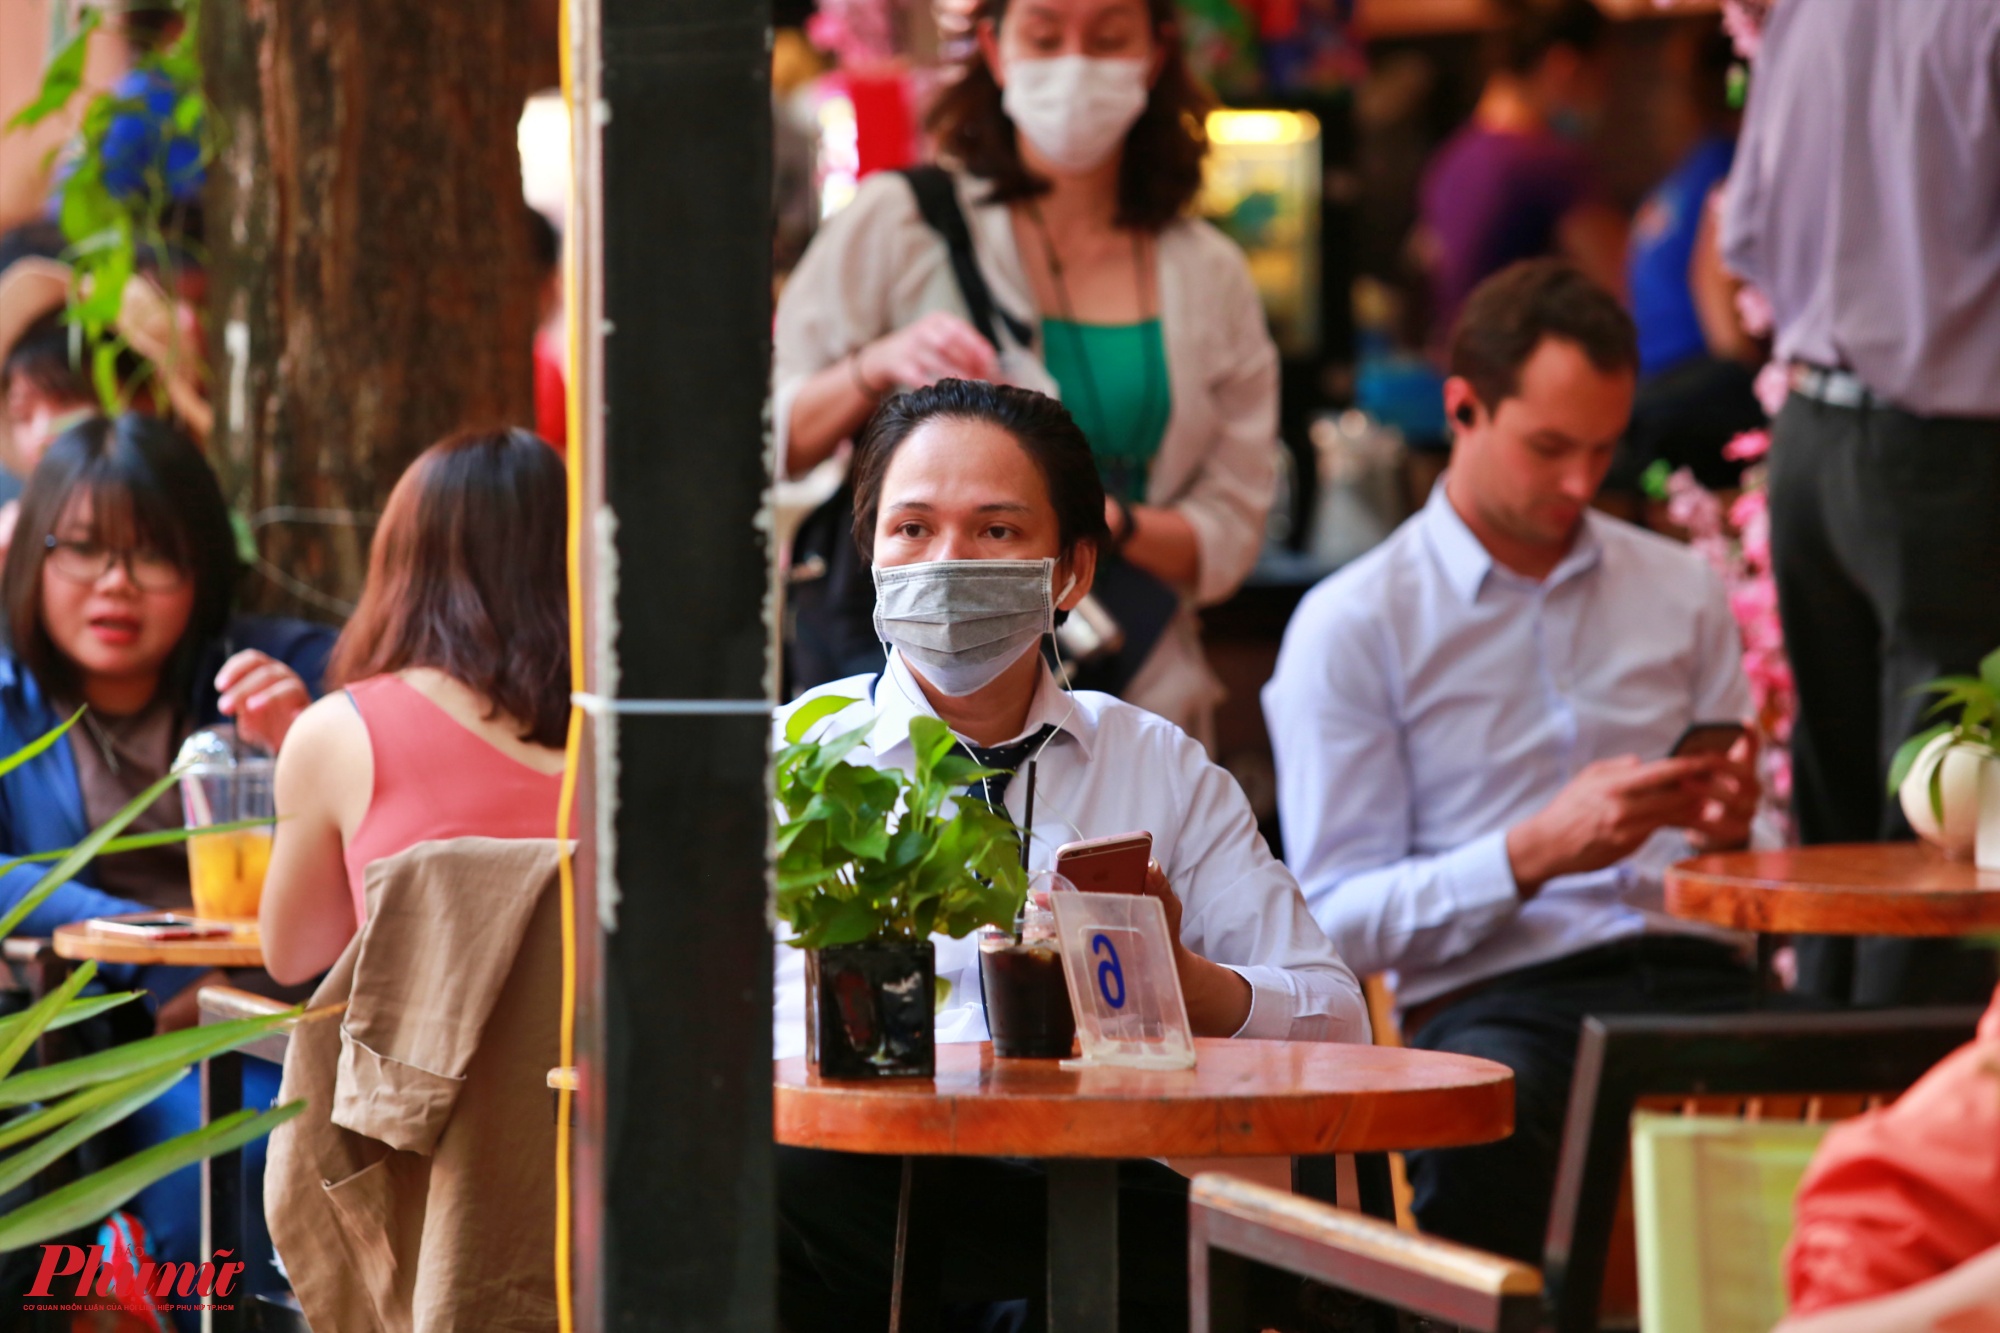 Theo ghi nhận, một số quán cà phê gần Nhà thờ Đức Bà hay đường sách Nguyễn Văn Bình, nhiều người cũng bị khẩu trang để phòng bệnh